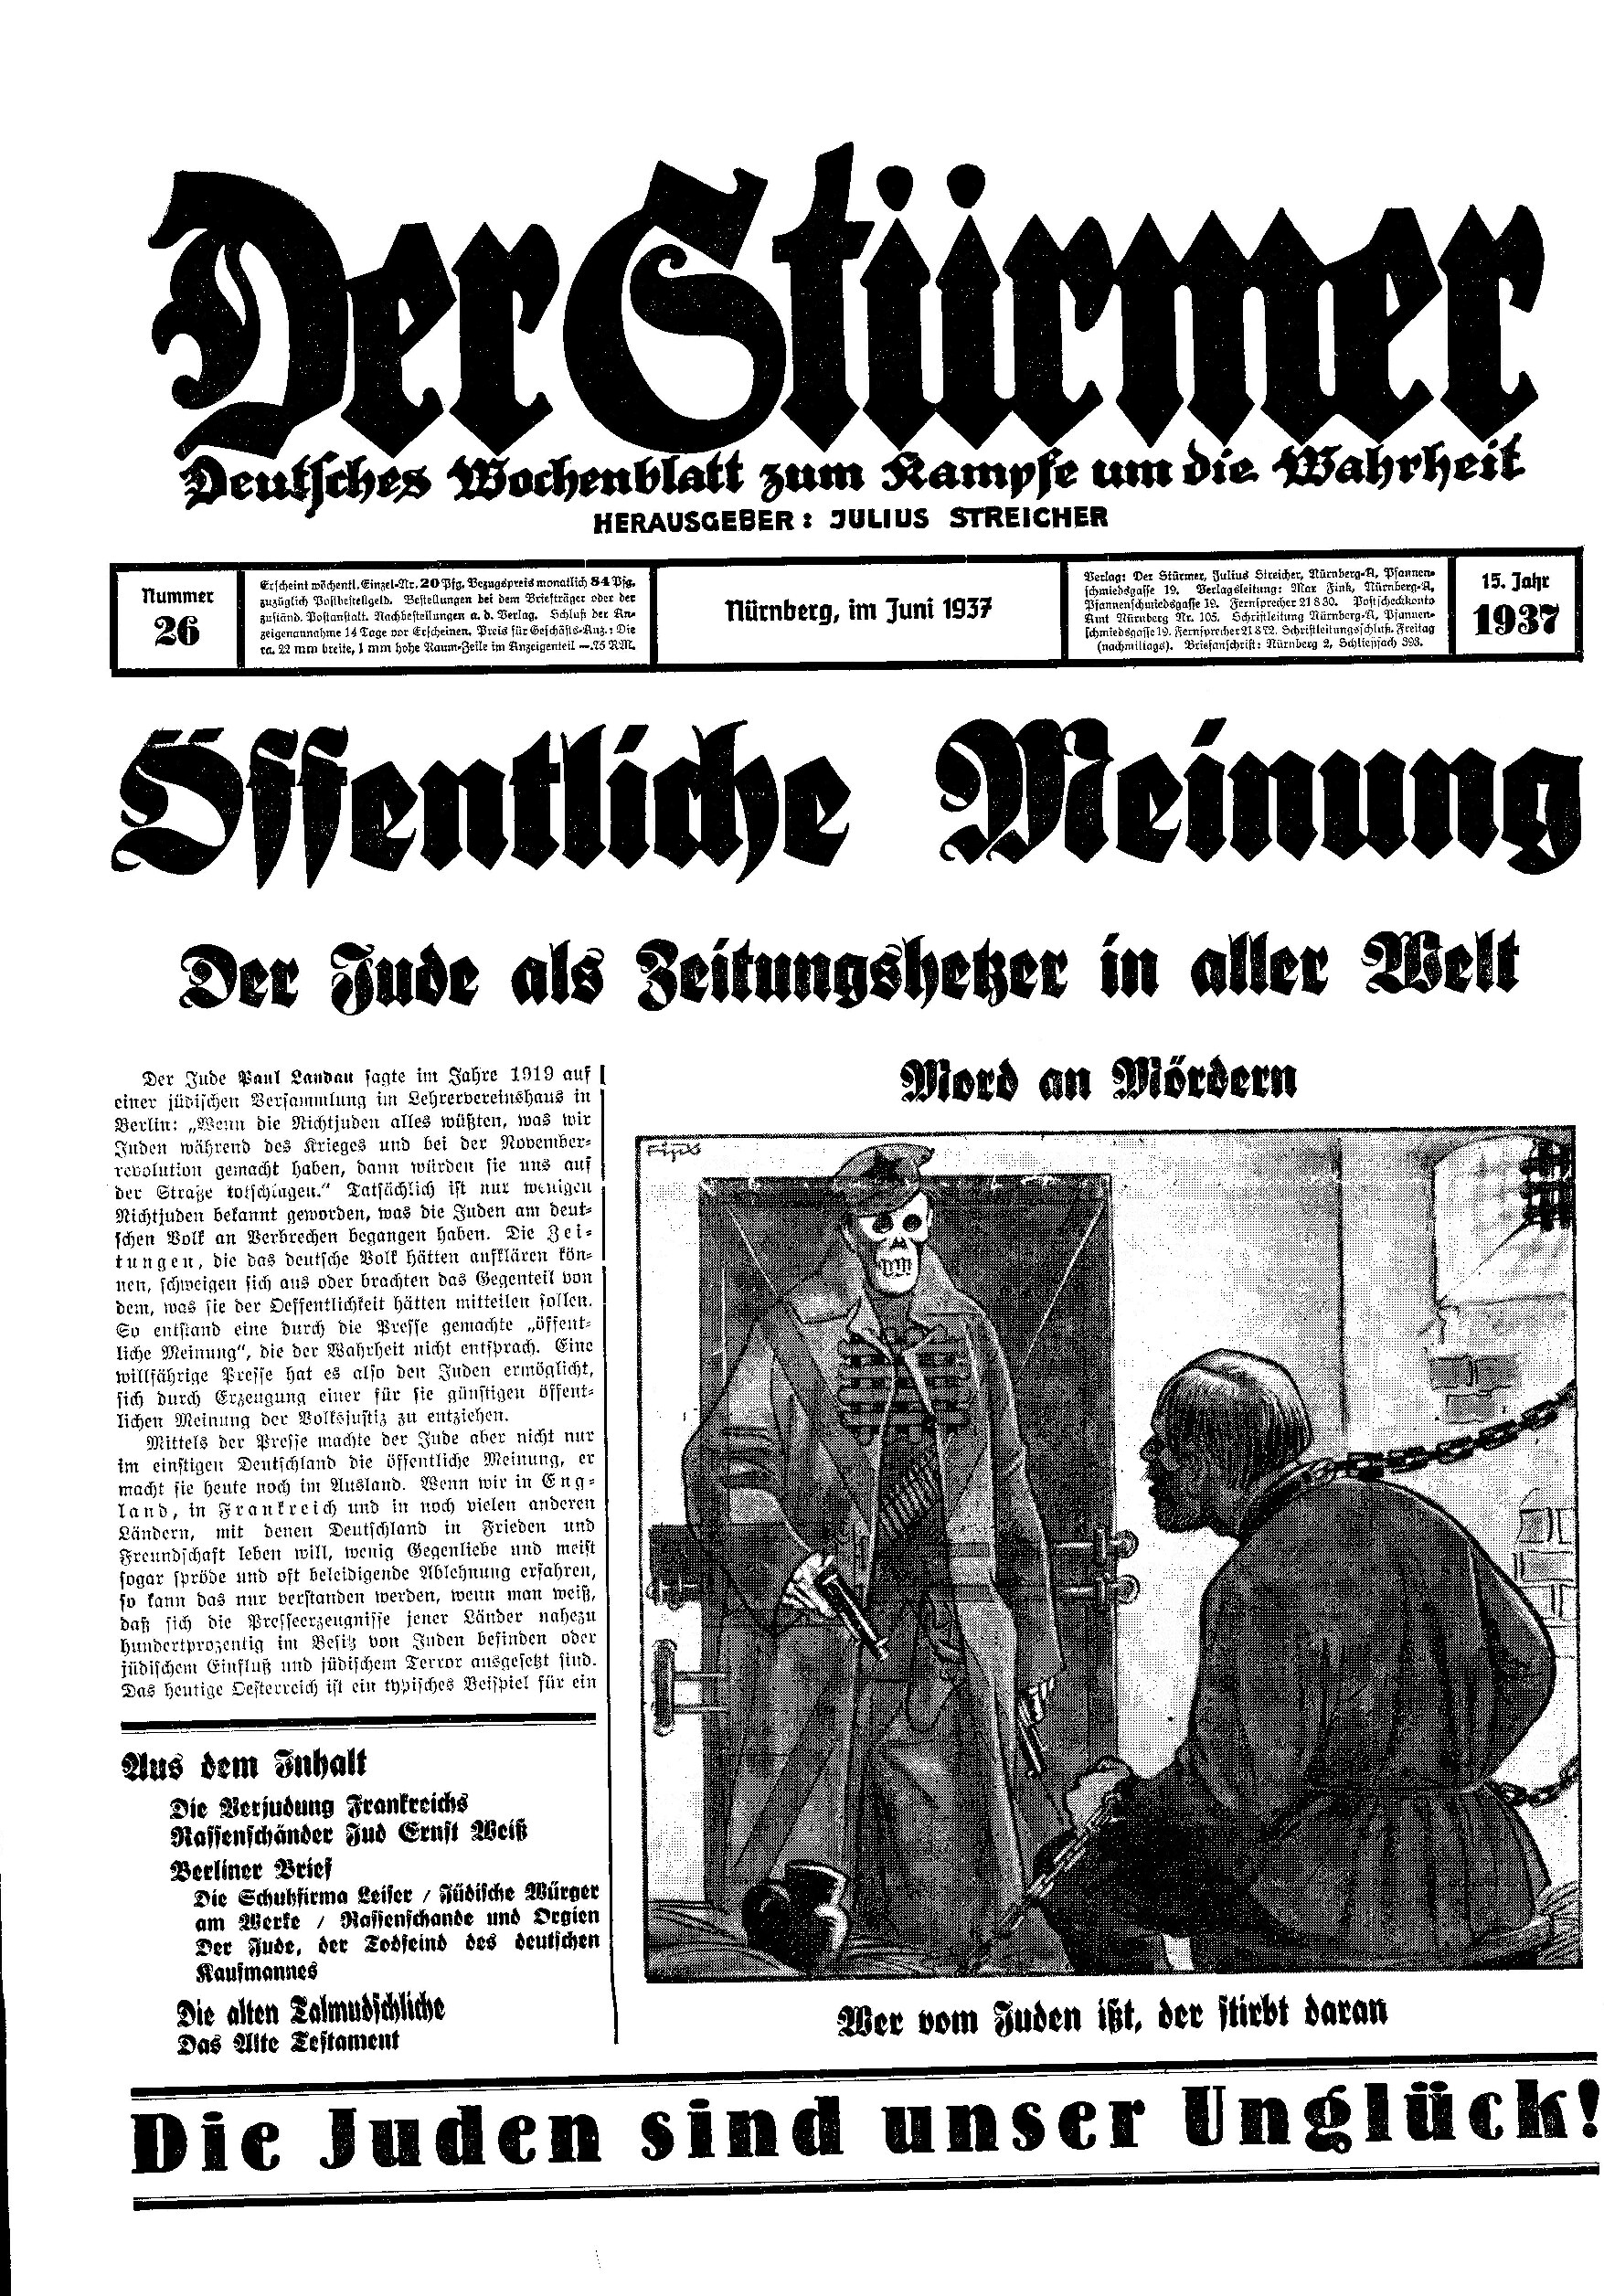 Der Stürmer - 1937 Nr. 26 - Öffentliche Meinung